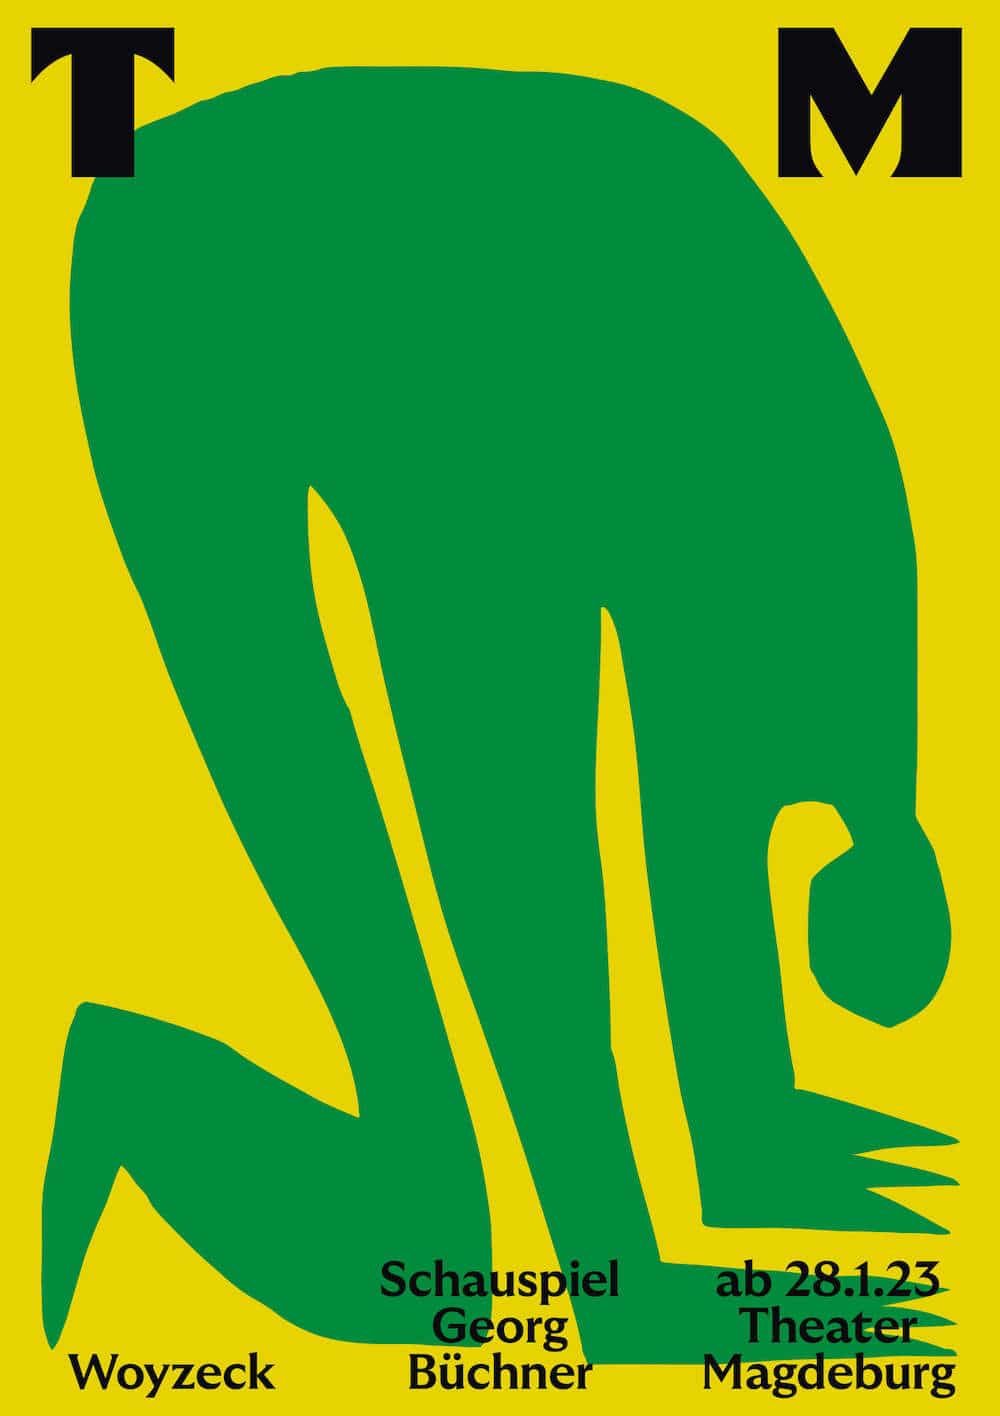 Plakat für das Theater Magdeburg von Neue Gestaltung: Ein Grünes Wesen in Scherenschnittoptik auf gelbem Grund für das Stück Woyzeck